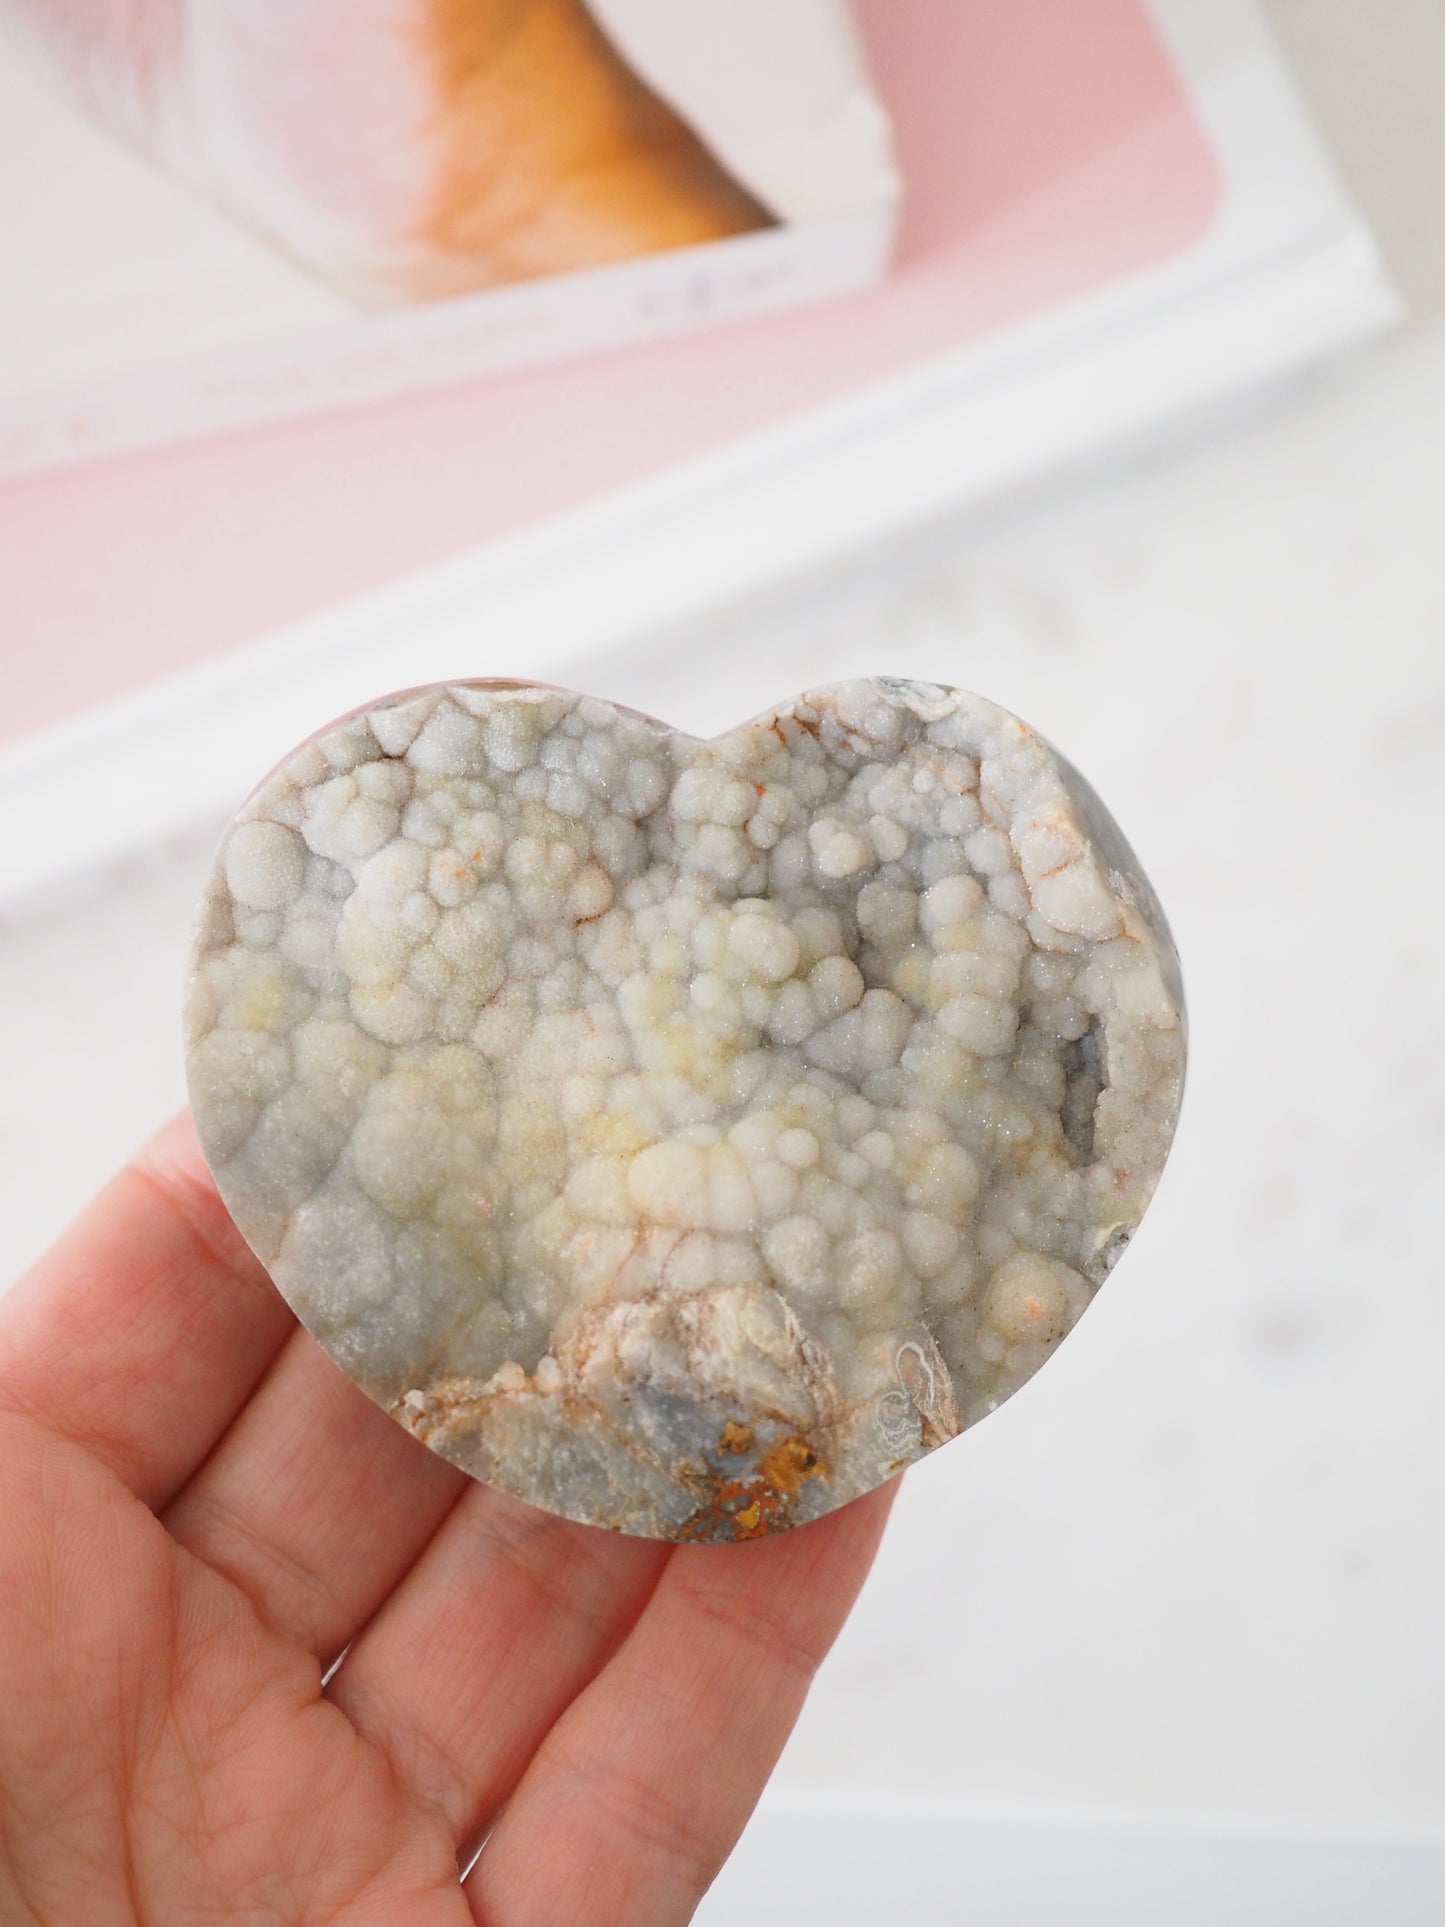 Sparkly Druzy Chalcedon Herz . Druzy Chalcedony Heart ca. 6.5 cm  [26]- aus Brasilien Hand Carved